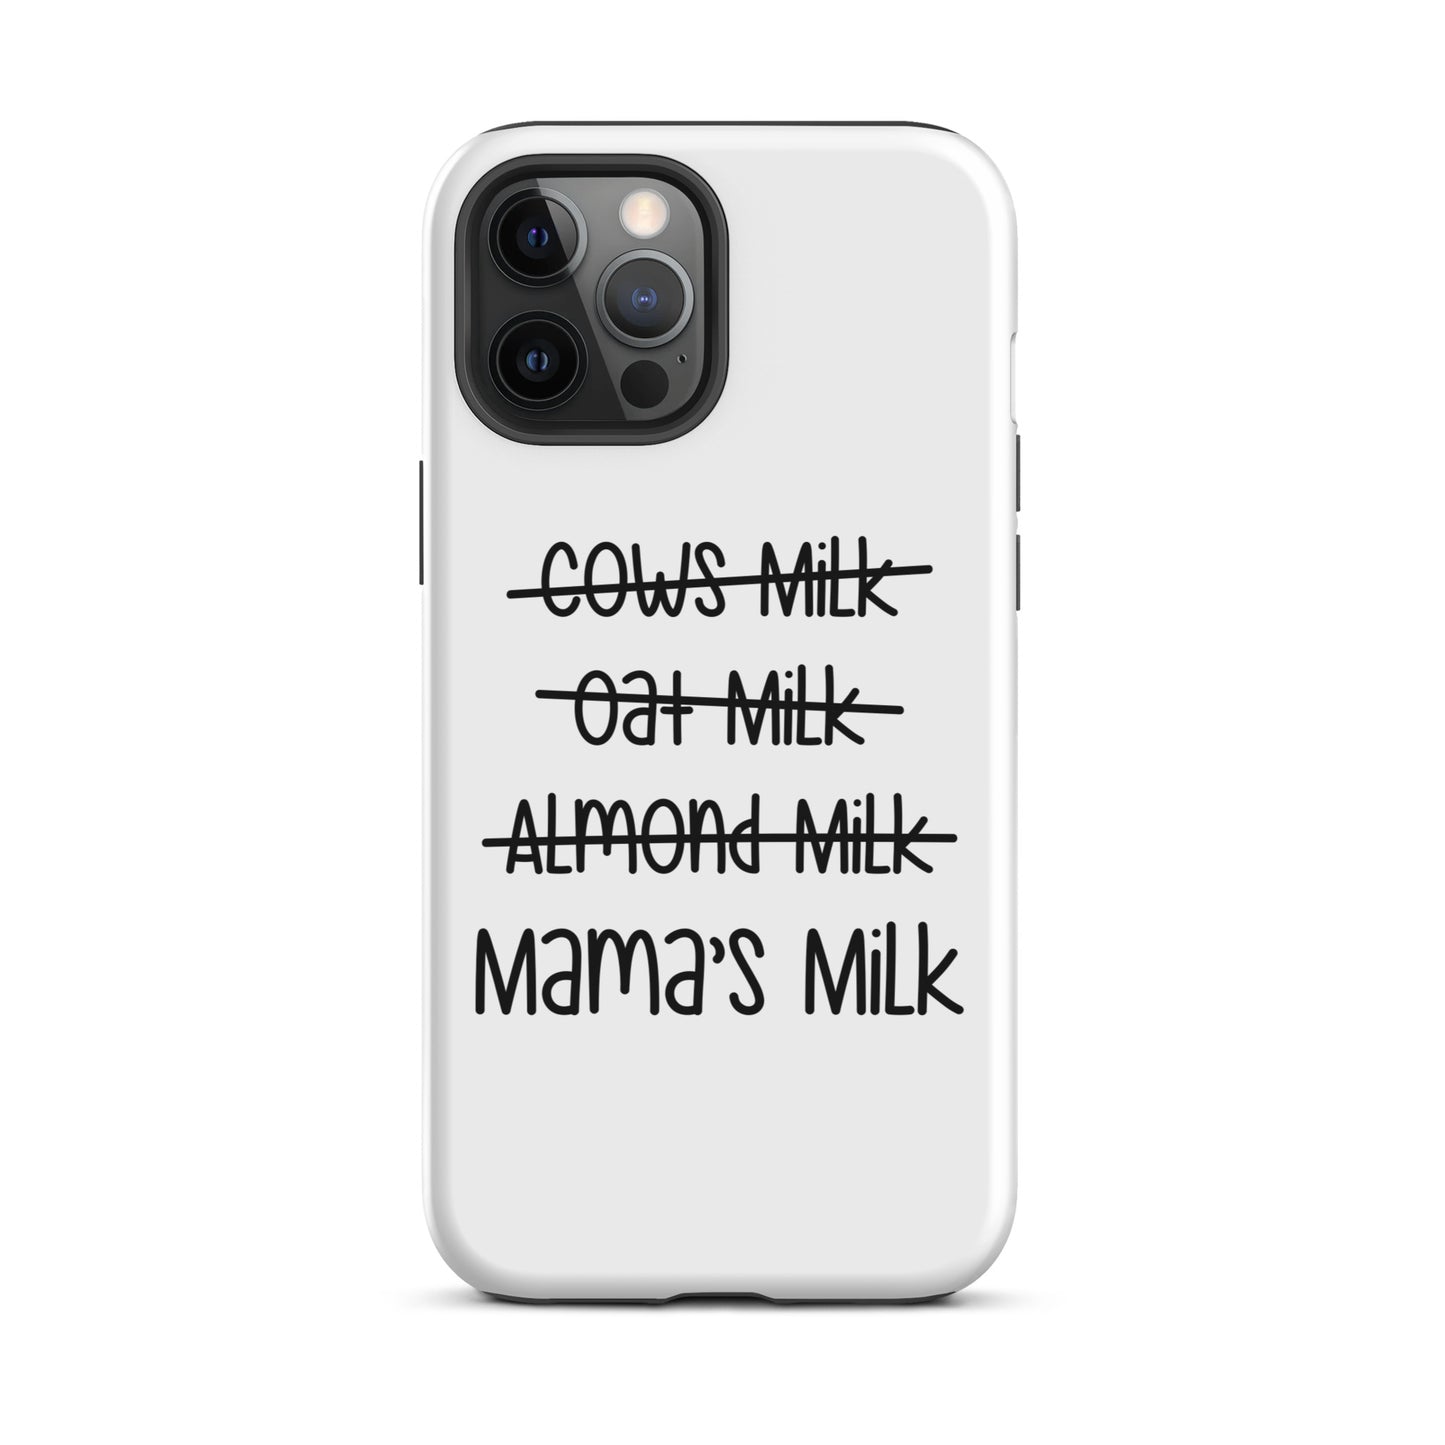 Mama's Milk iPhone case